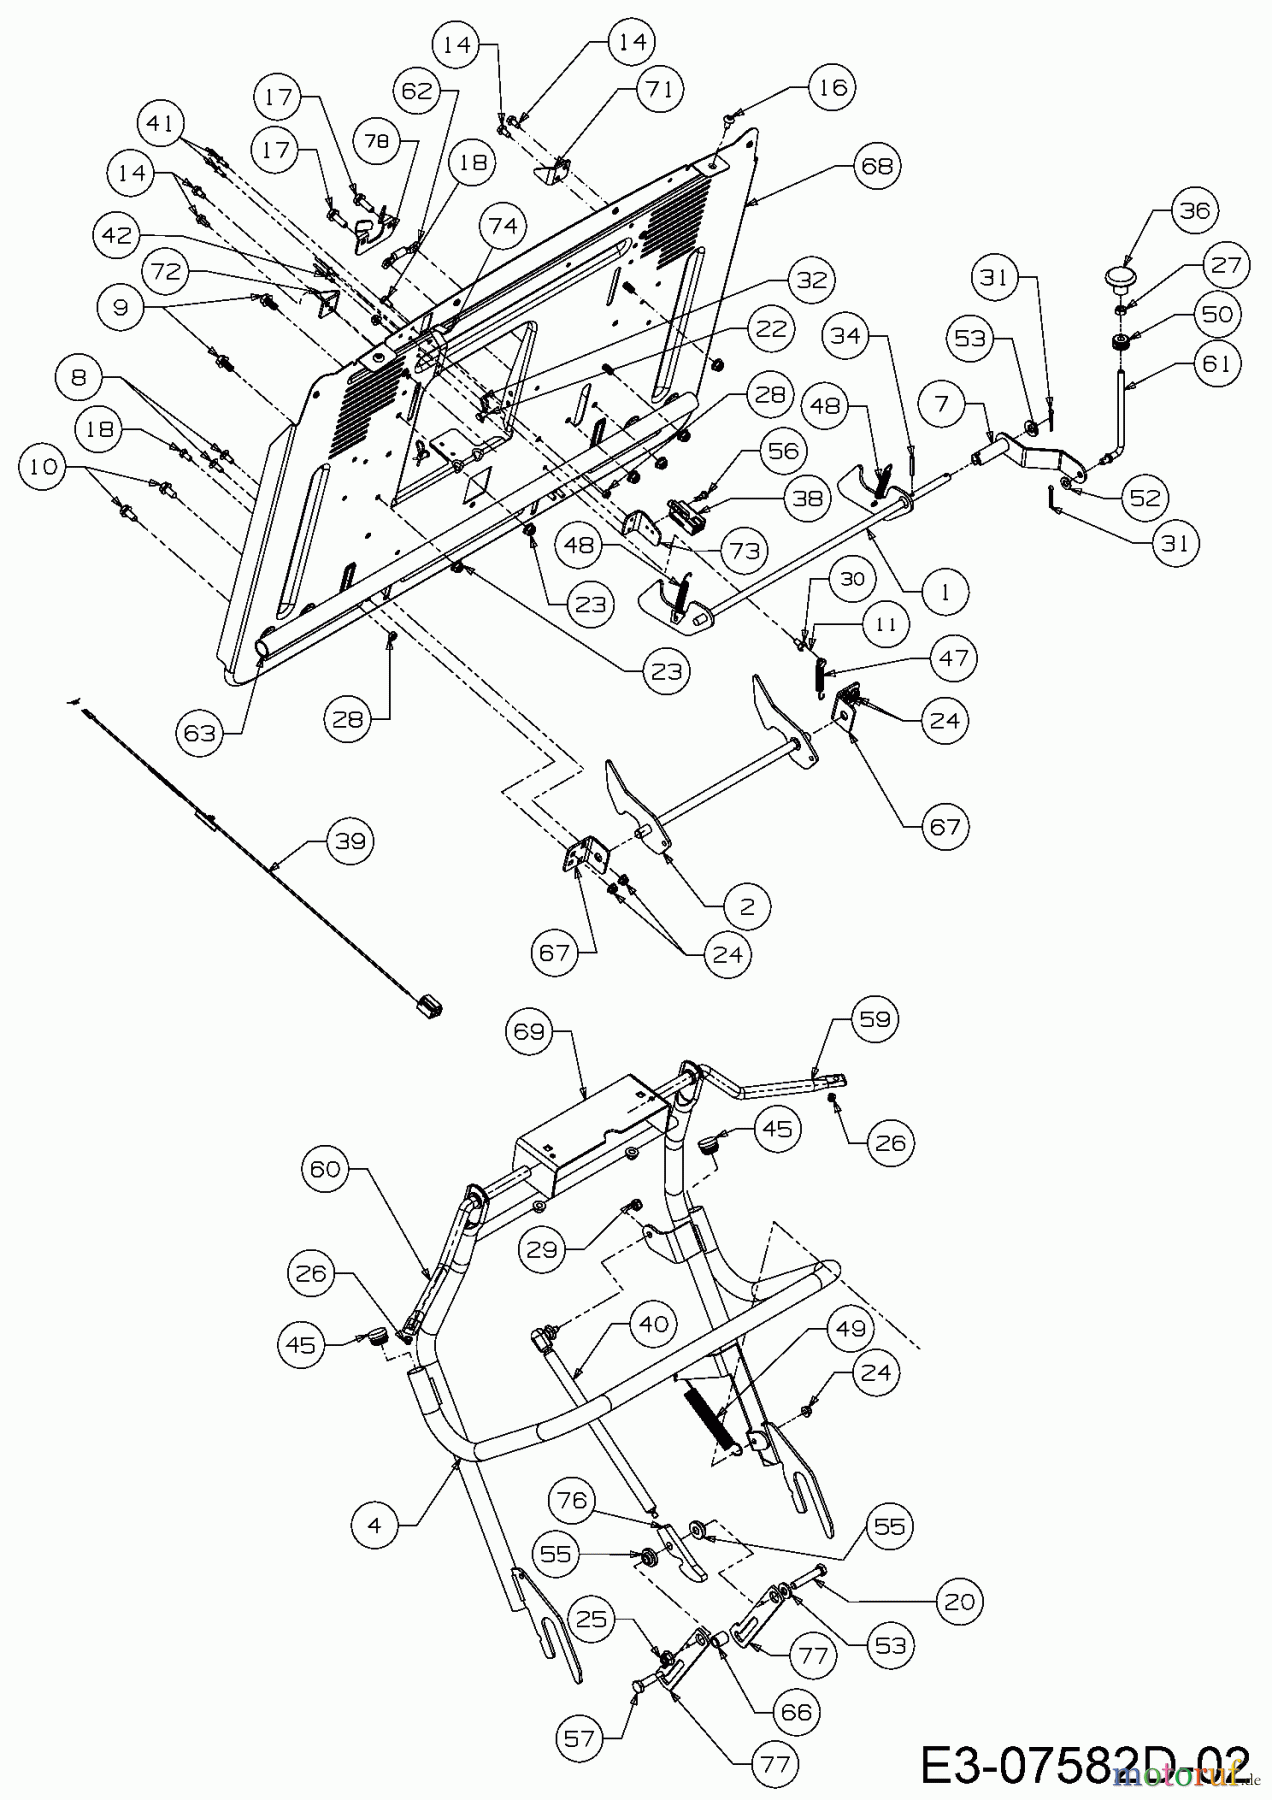  Massey Ferguson Rasentraktoren MF 36-16 ARD 13HD90GE395  (2016) Aushebung Grasfangsack, Heckplatte